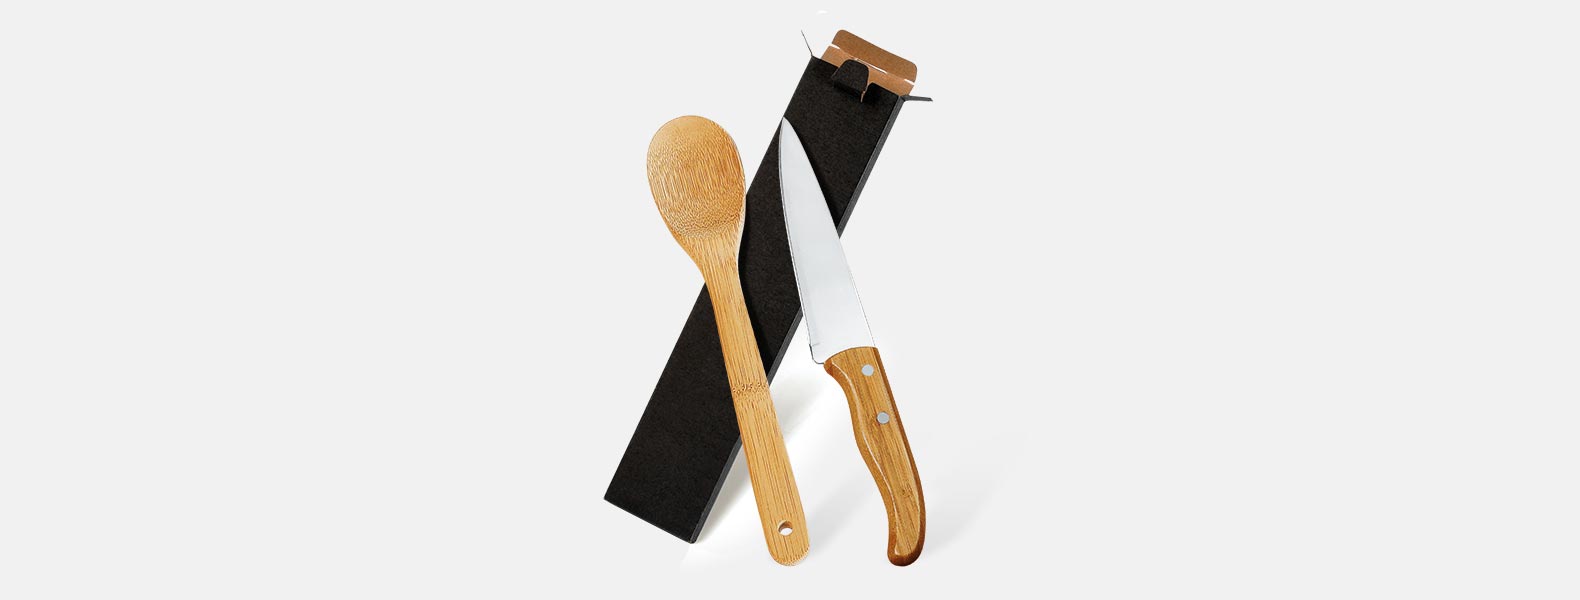 Conjunto de Faca em Bambu/Aço Inox; Acompanha faca 7'' em Bambu/Inox e colher em Bambu 30cm. Como cortesia, na faca 7 fazemos uma gravação com os cortes do boi.